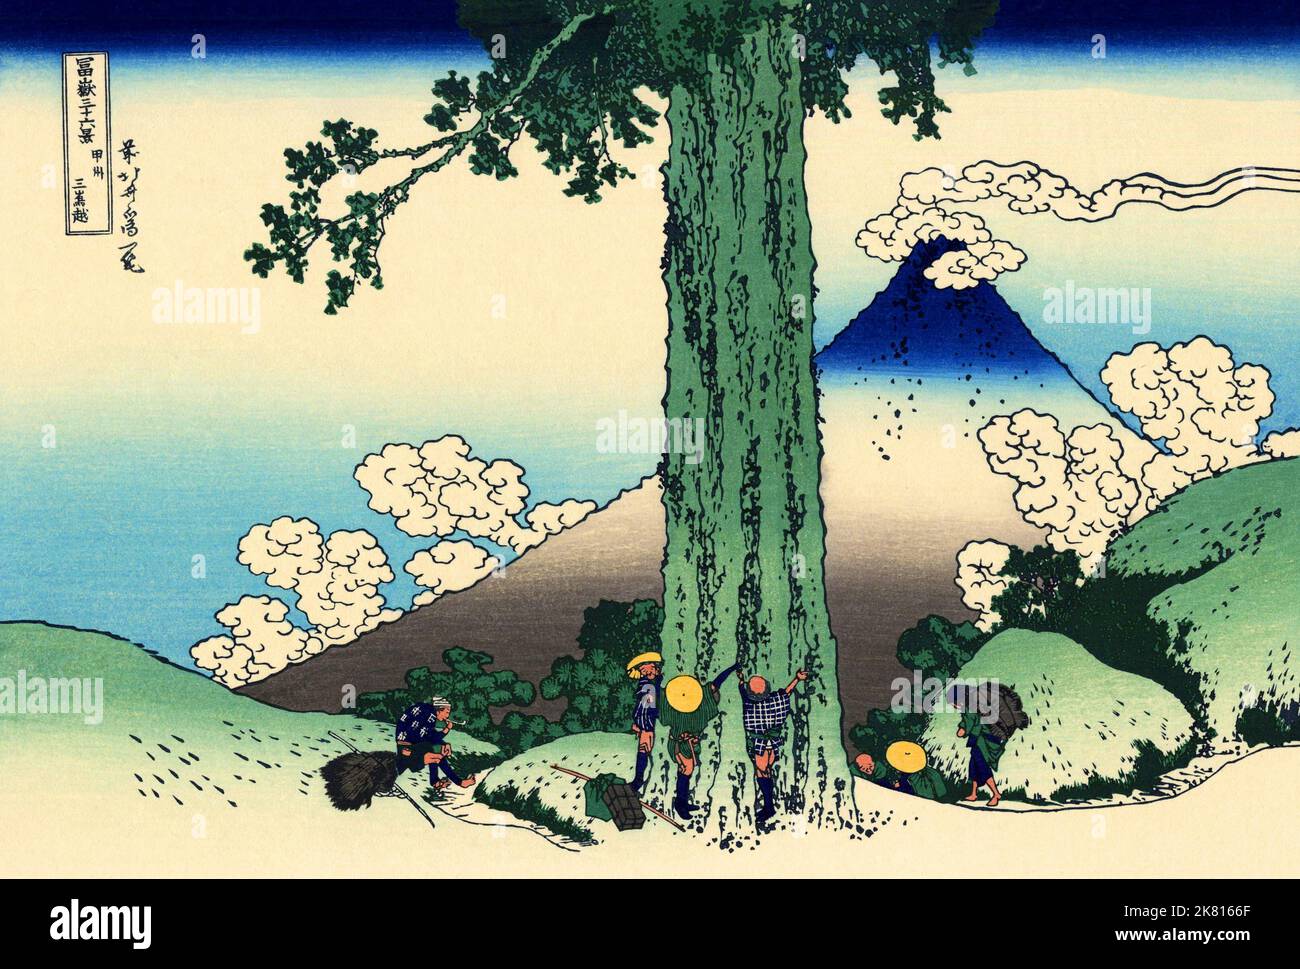 Giappone: ‘Passo Mishima nella provincia di Kai’. Ukiyo-e stampa in blocco della serie «trentasei viste del Monte Fuji» di Katsushika Hokusai (31 ottobre 1760 - 10 maggio 1849), c.. 1830. «36 viste del Monte Fuji» è una serie di grandi stampe a blocchi di legno realizzate dall’artista Katsushika Hokusai. La serie raffigura il Monte Fuji in stagioni e condizioni meteorologiche diverse da una varietà di luoghi e distanze. Si compone di 46 stampe create tra il 1826 e il 1833. I primi 36 sono stati inclusi nella pubblicazione originale e, a causa della loro popolarità, altri 10 sono stati aggiunti dopo la pubblicazione originale. Foto Stock